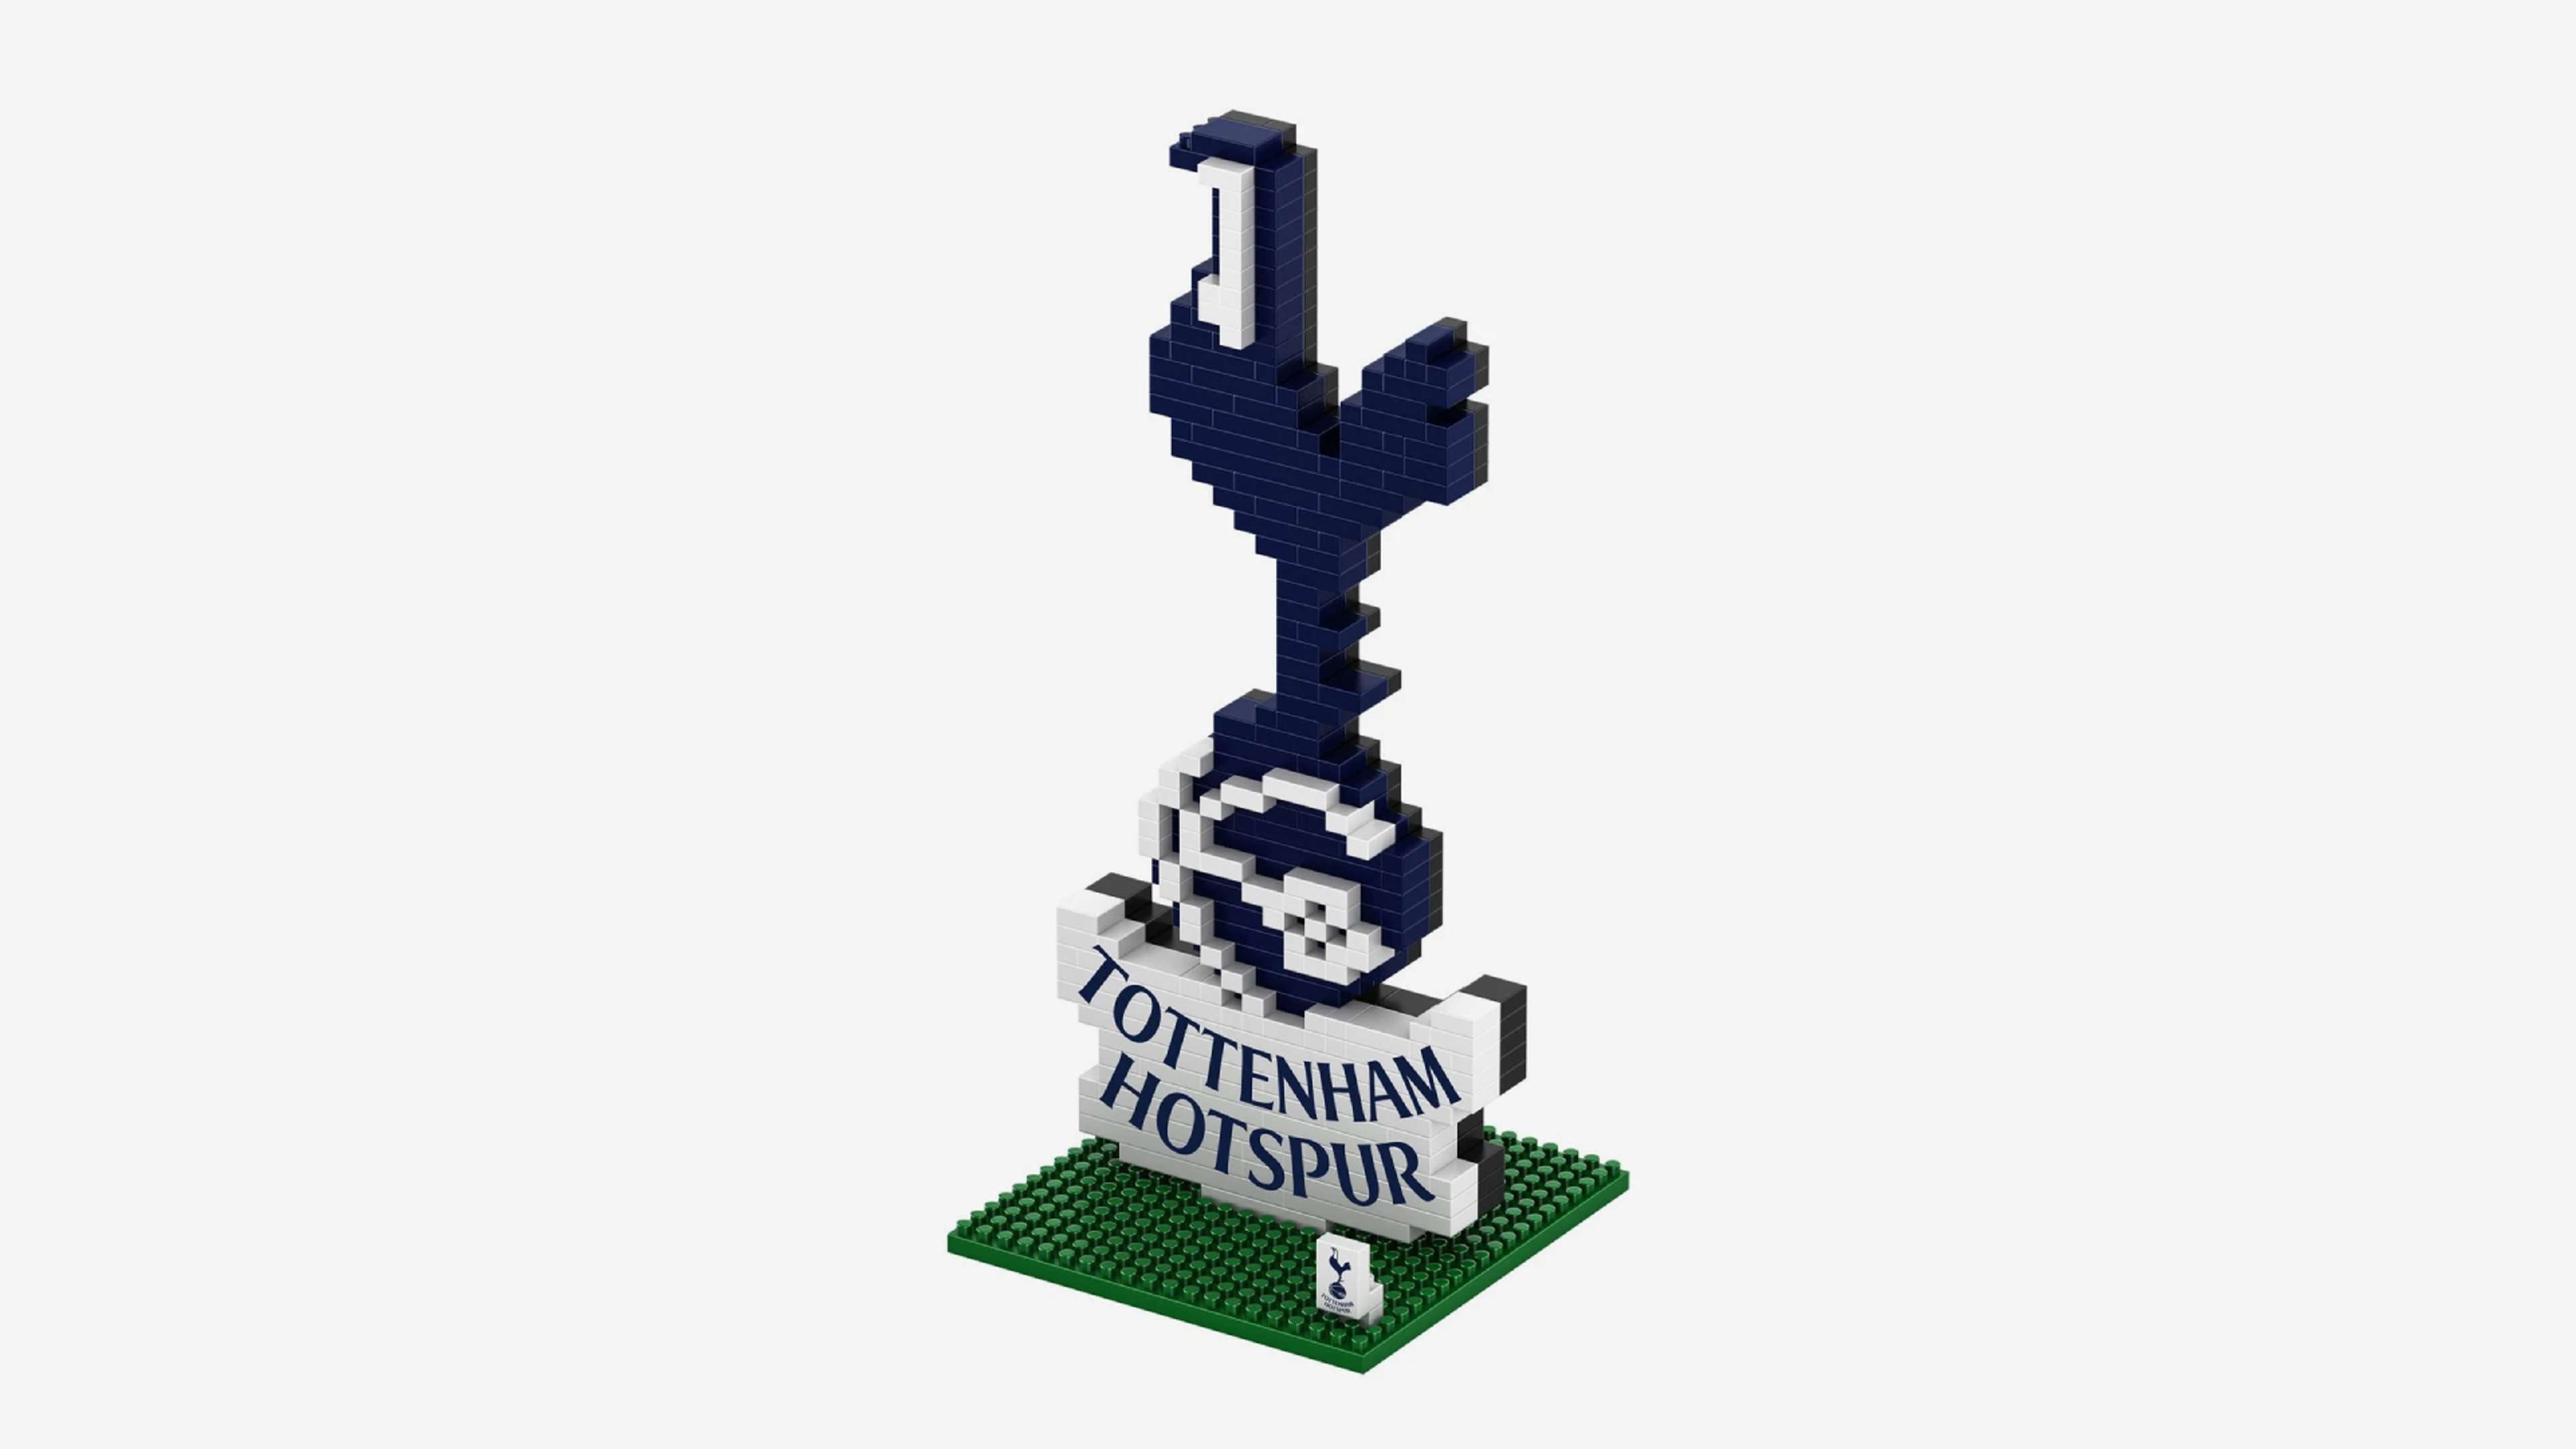 14 Tottenham  bryxl logo